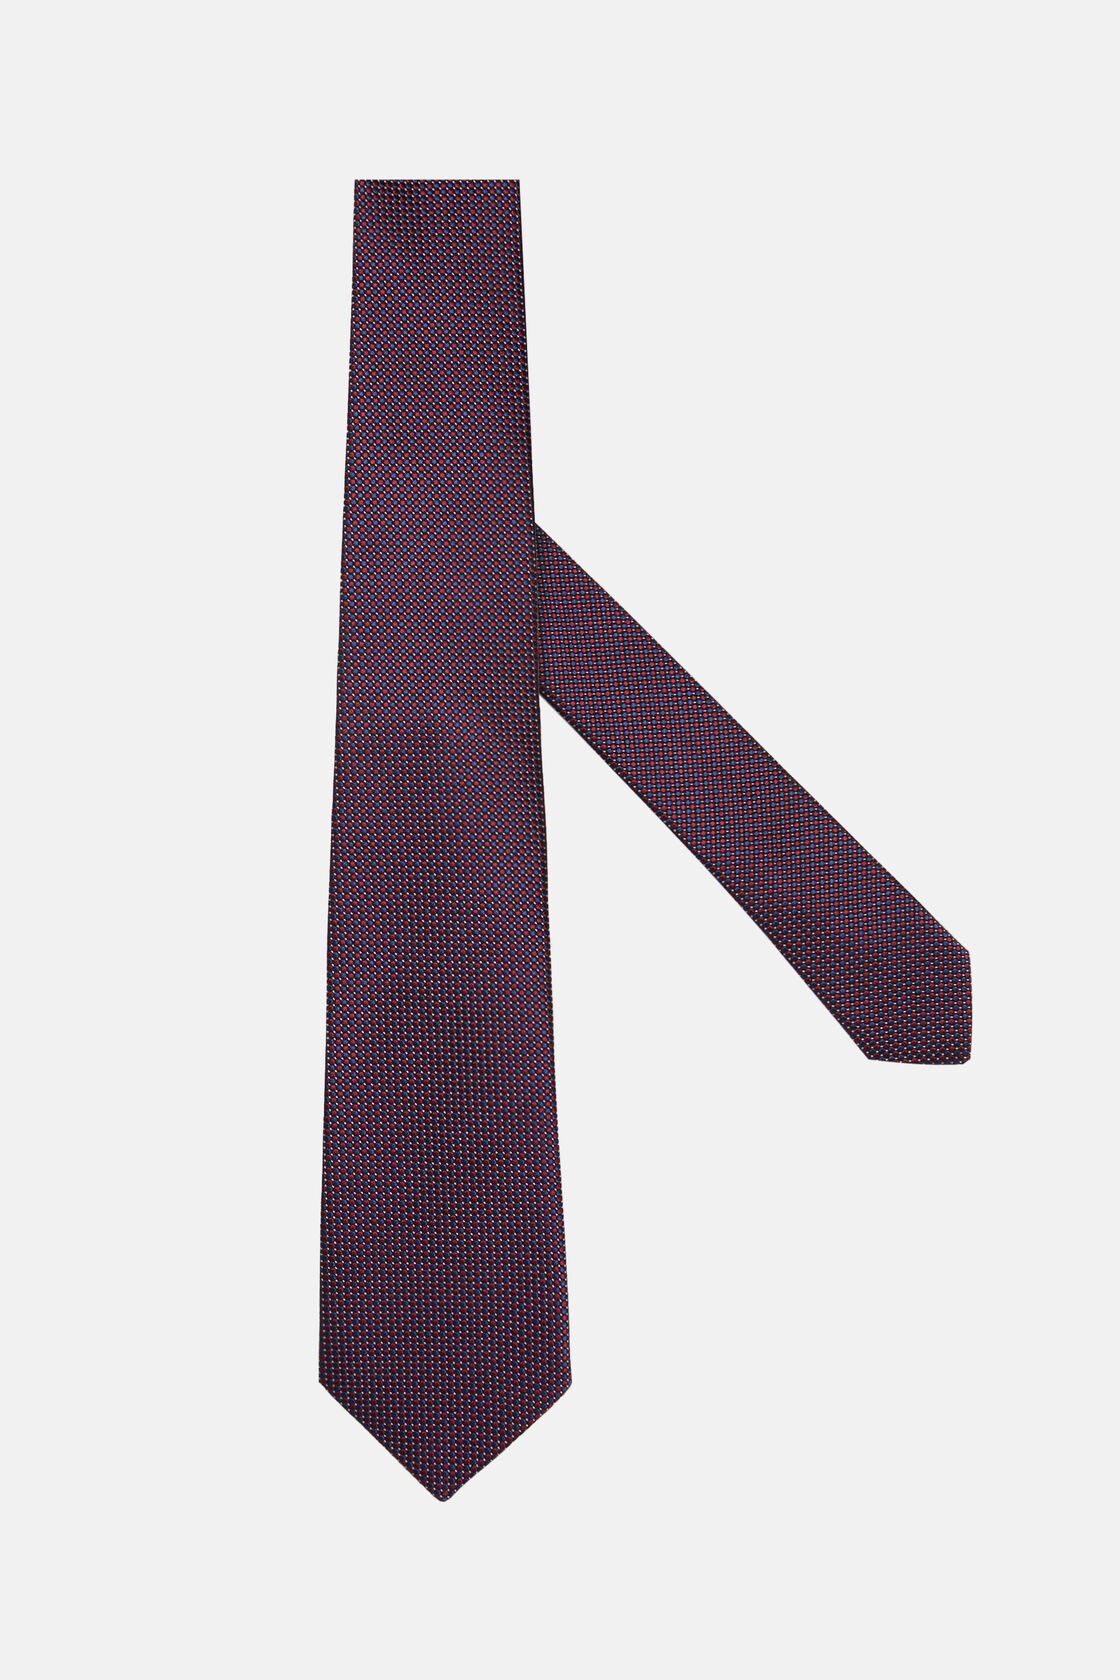 Cravatta Motivo Pois In Misto Seta, Burgundy, hi-res